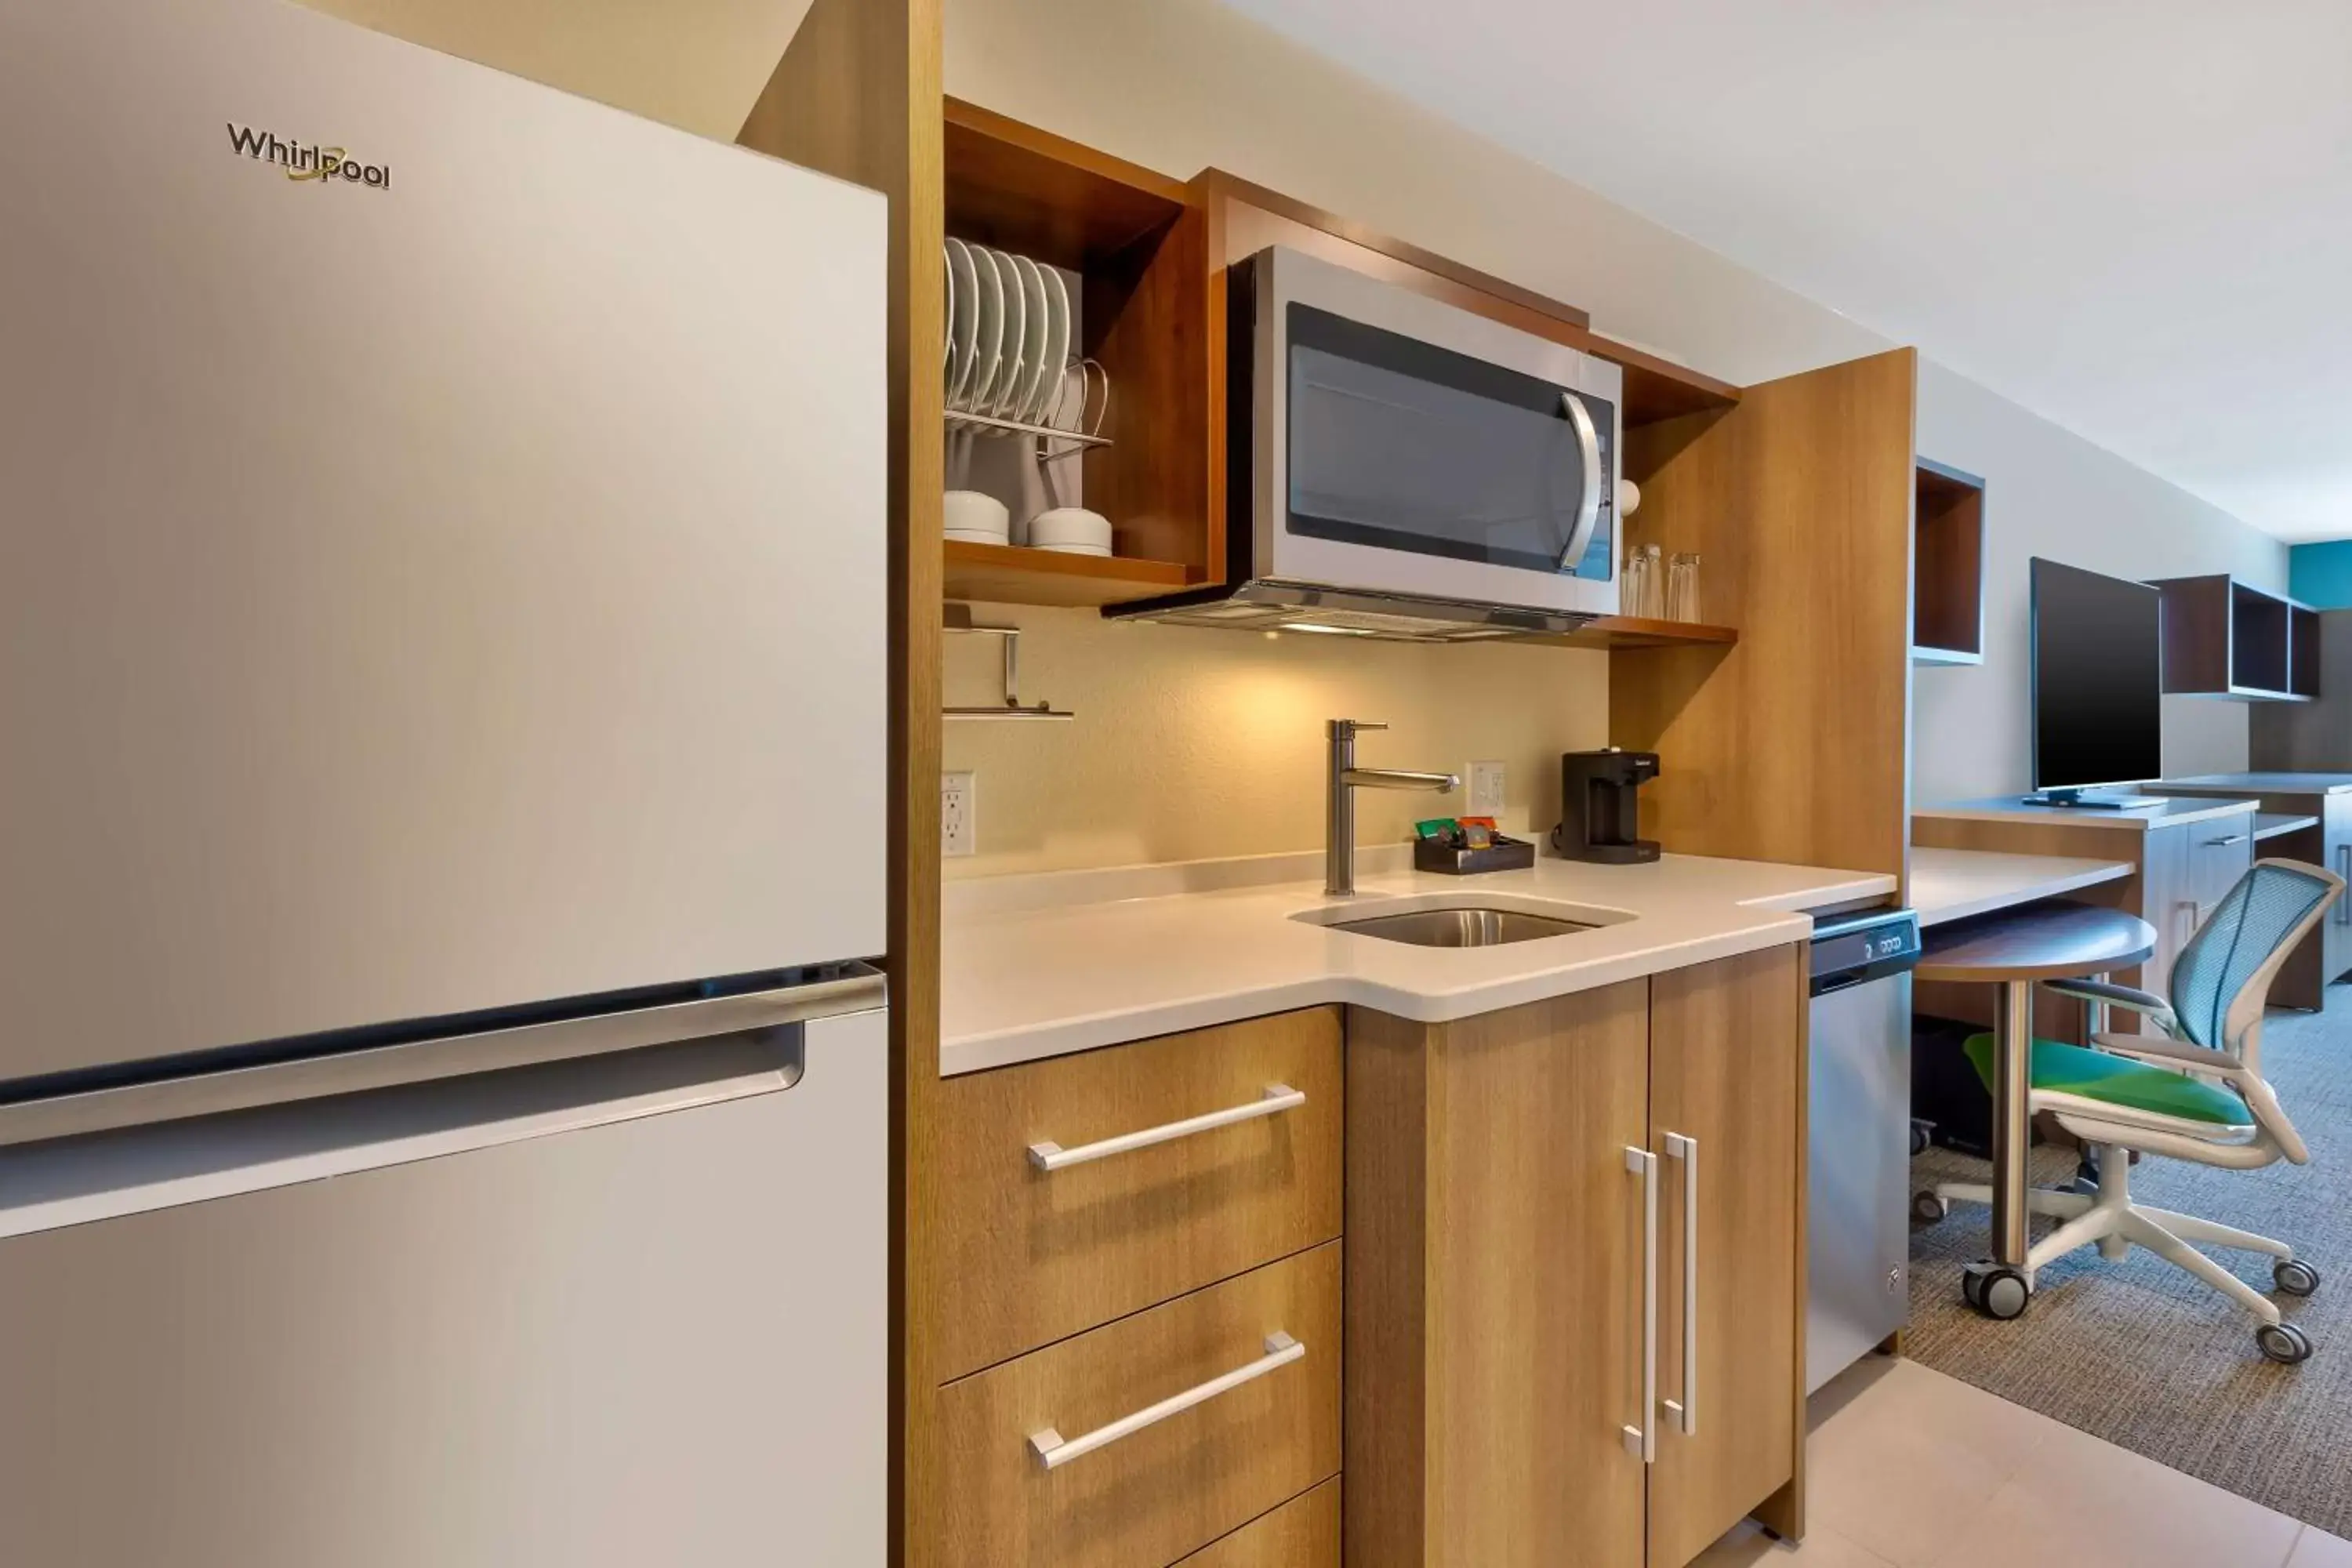 Kitchen or kitchenette, Kitchen/Kitchenette in Home2 Suites By Hilton Battle Creek, Mi